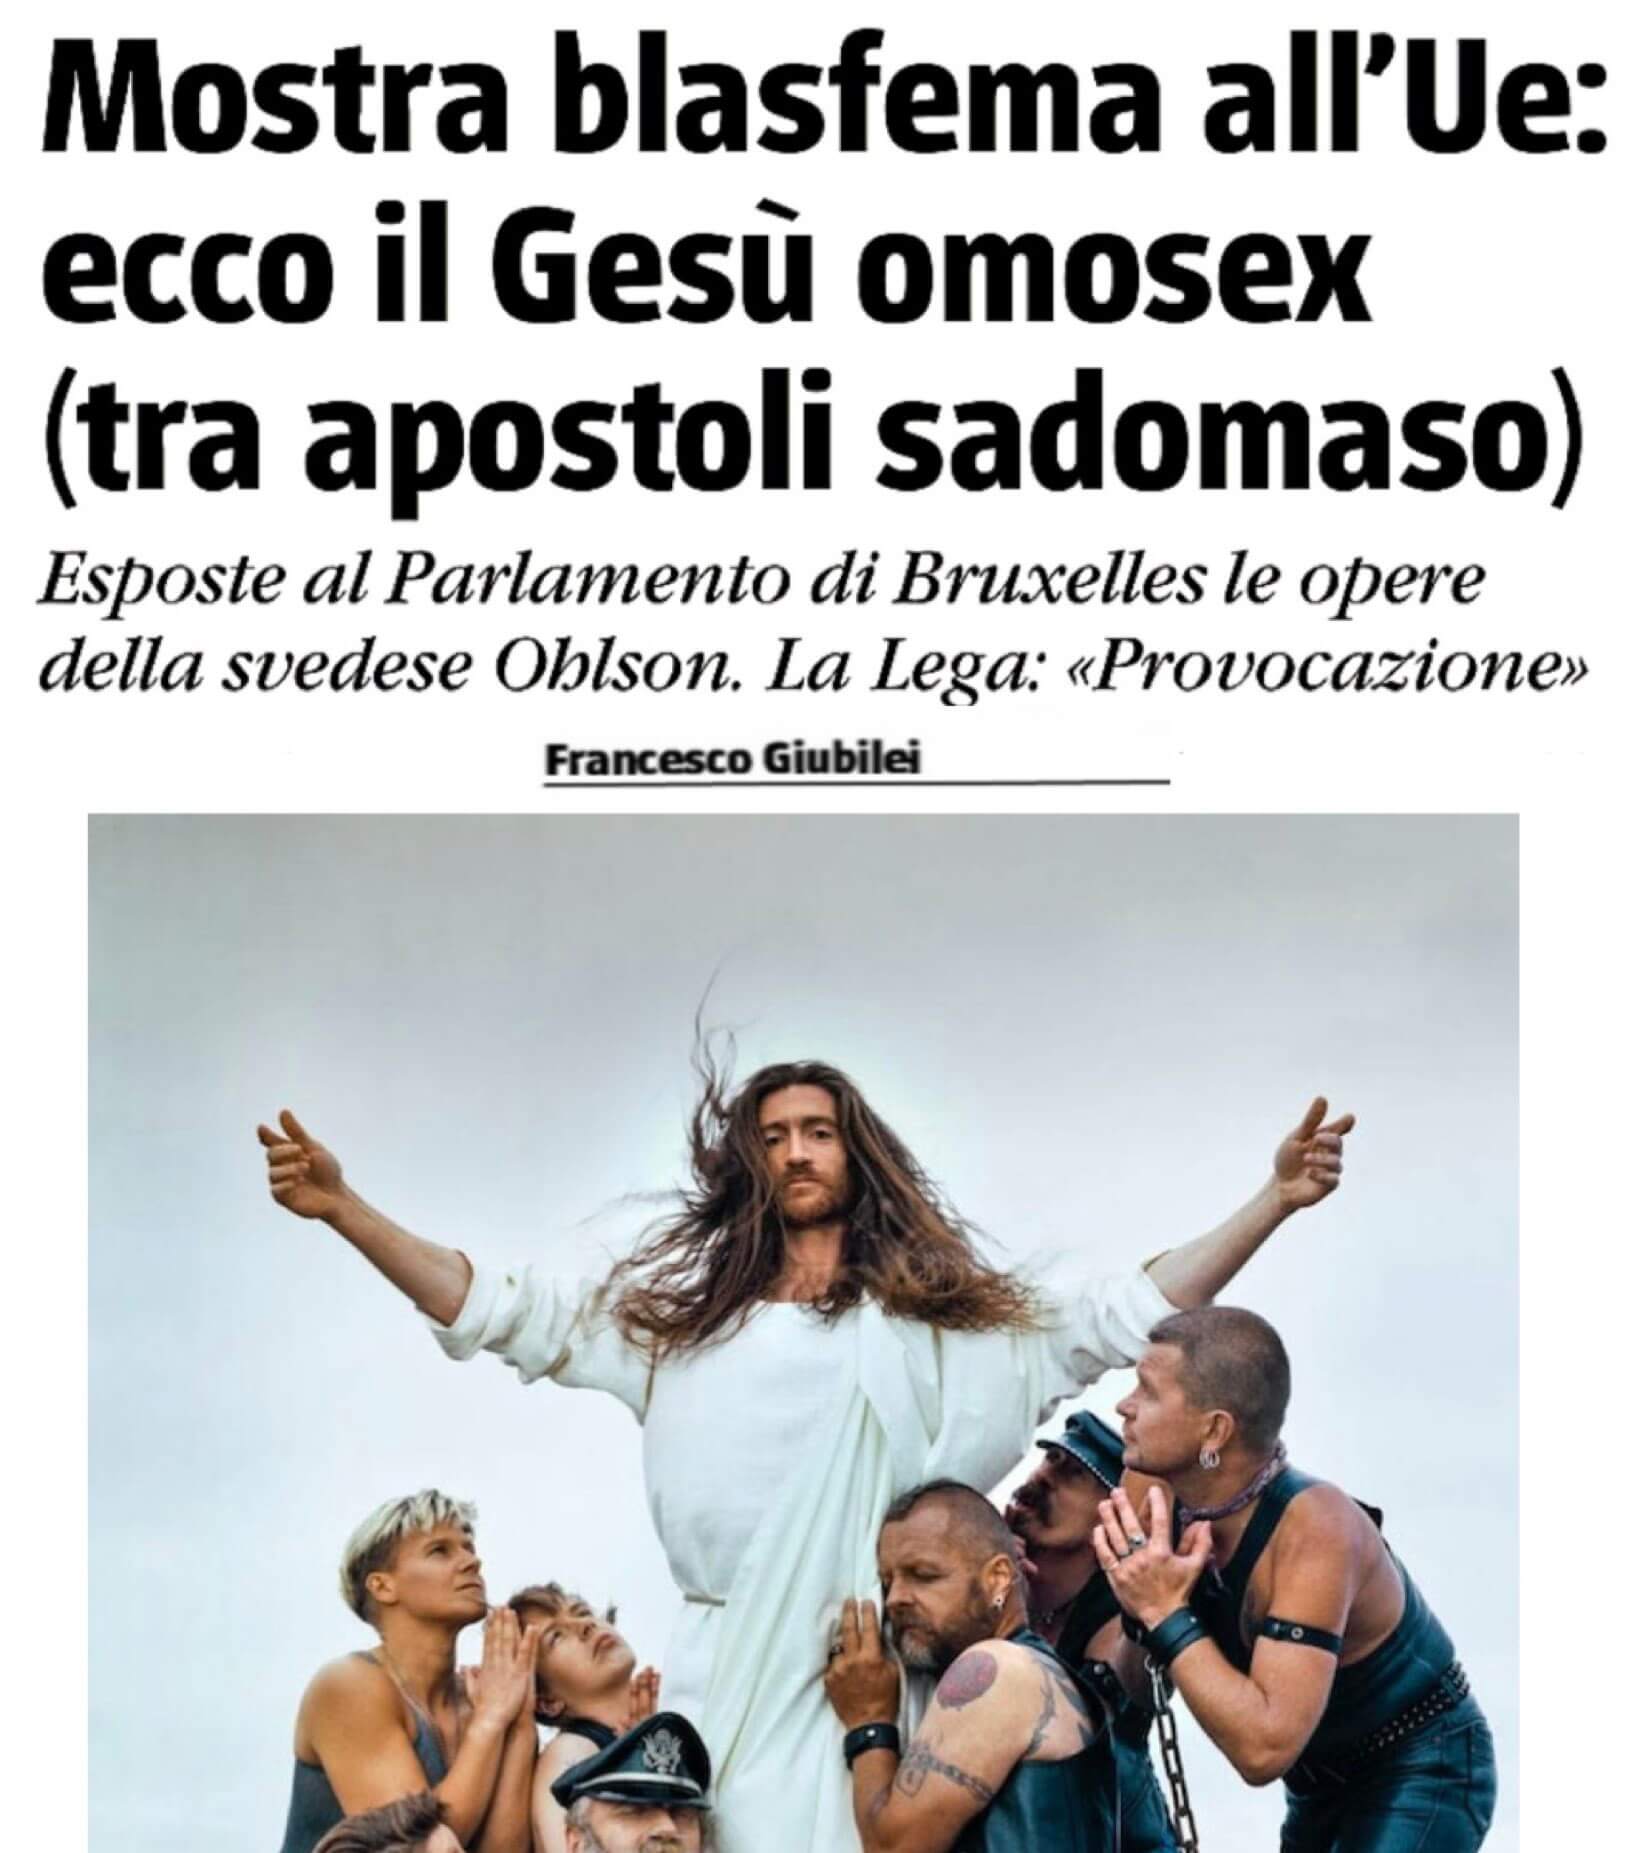 Salvini se la prende con le opere di Ohlson a Bruxelles: "Uno schifo il Gesù gay tra apostoli sadomaso" - Il governo Meloni se la prende con le opere di Ohlson a Bruxelles 2 - Gay.it